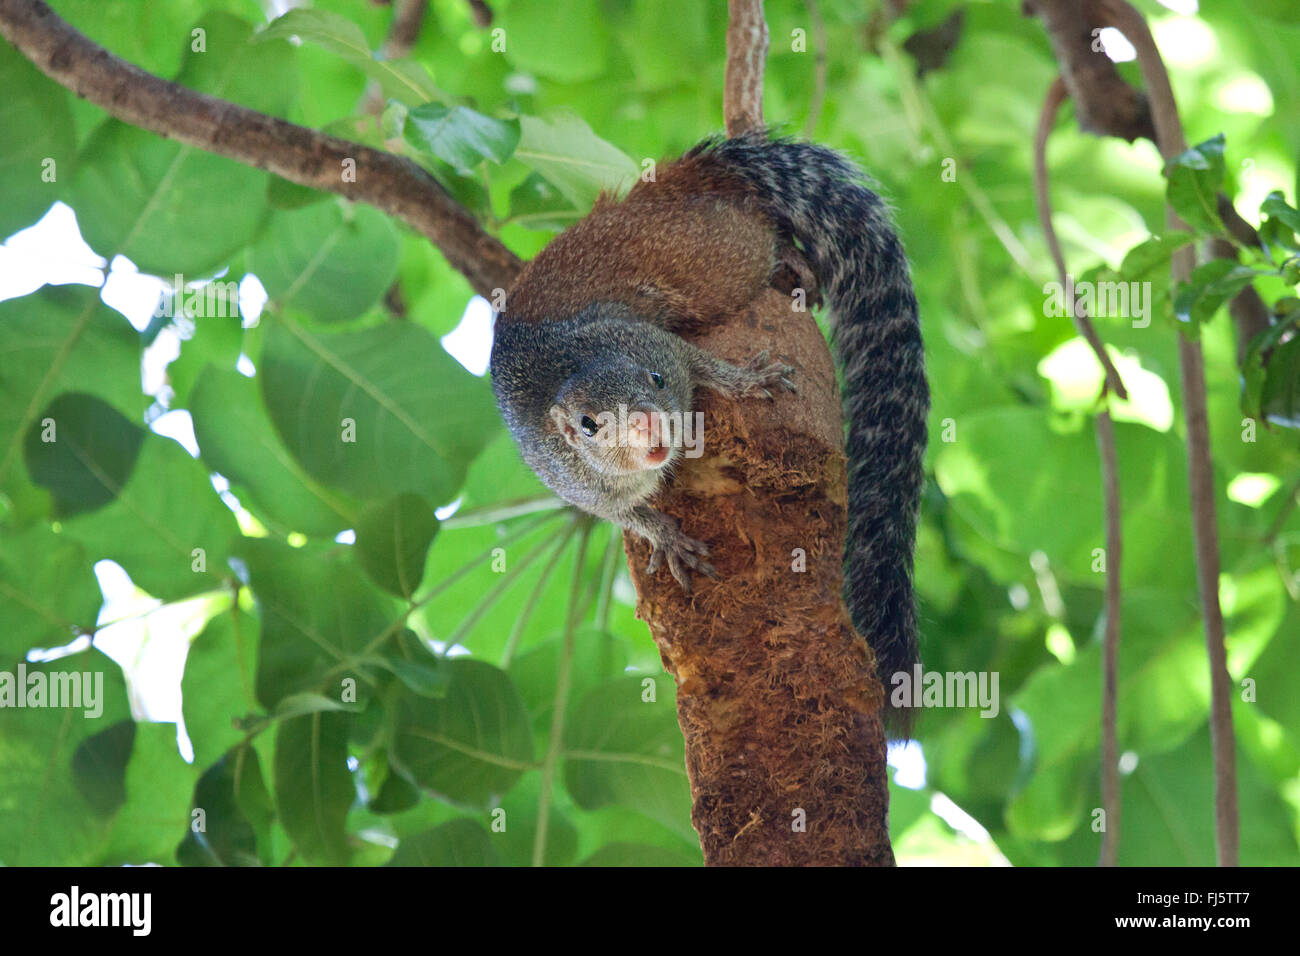 Smith's bush squirrel, Tree squirrel (Paraxerus cepapi), climbs on a tree, Zimbabwe, Mana Pools National Park Stock Photo